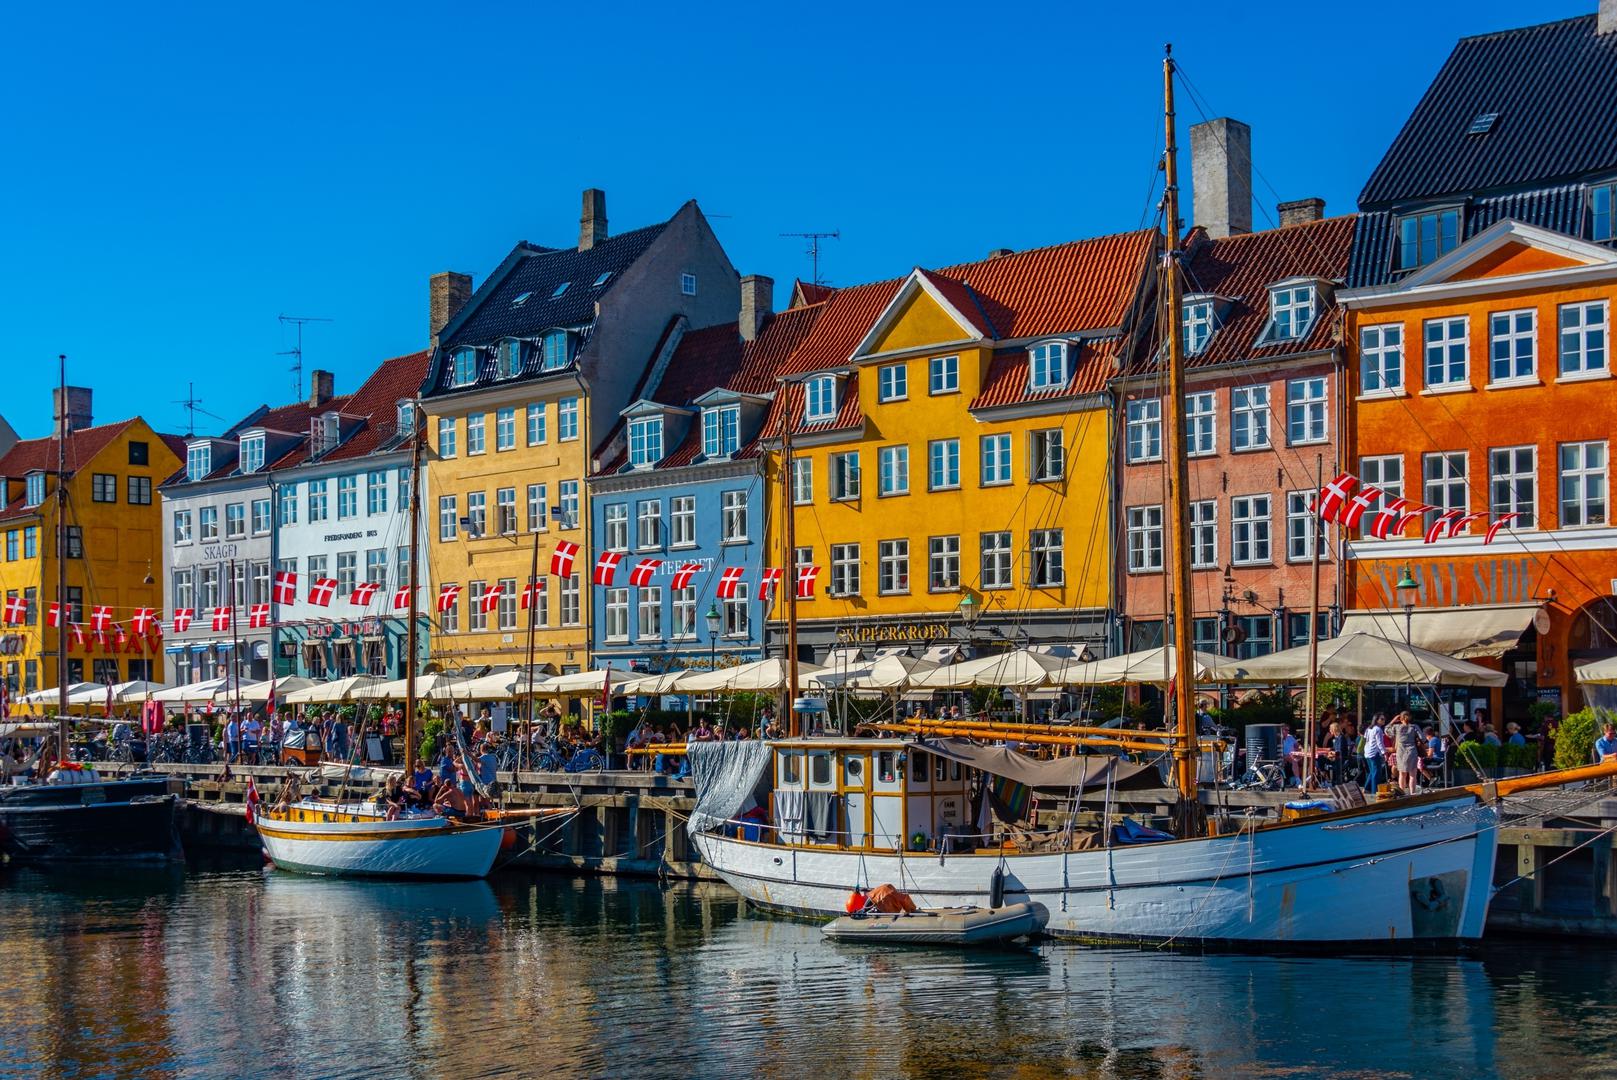 Kopenhagen, Danska: Iako poznat kao skup grad, stanovnici Kopenhagena 96 posto su zadovoljni životom ovdje, prema istraživanju. Danska prijestolnica je od švedskog grada Malmoa odvojena tjesnacem Øresund, ali stanovnici mogu putovati preko granice cestom i željeznicom. Slično kao u Groningenu, Kopenhagen je iznimno prijateljski nastrojen prema biciklistima. Grad ima nevjerojatnu kulturnu ponudu, uključujući knjižnicu i galeriju The Black Diamond kao i Operu u Kopenhagenu.